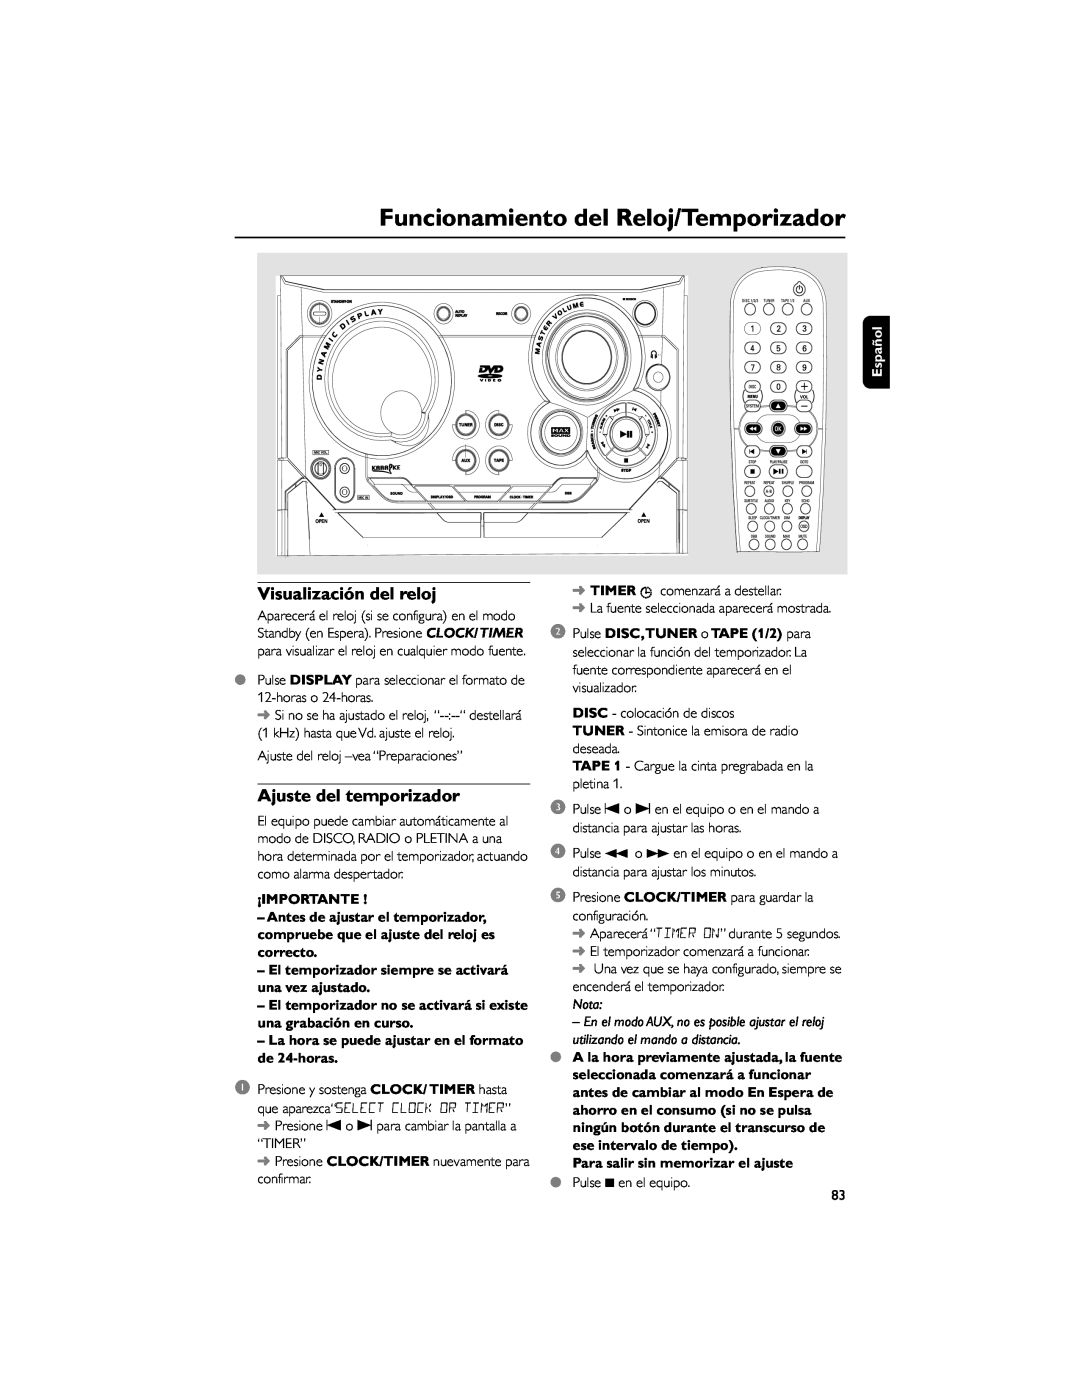 Philips FWD792 Funcionamiento del Reloj/Temporizador, Visualización del reloj, Ajuste del temporizador, Español, Nota 